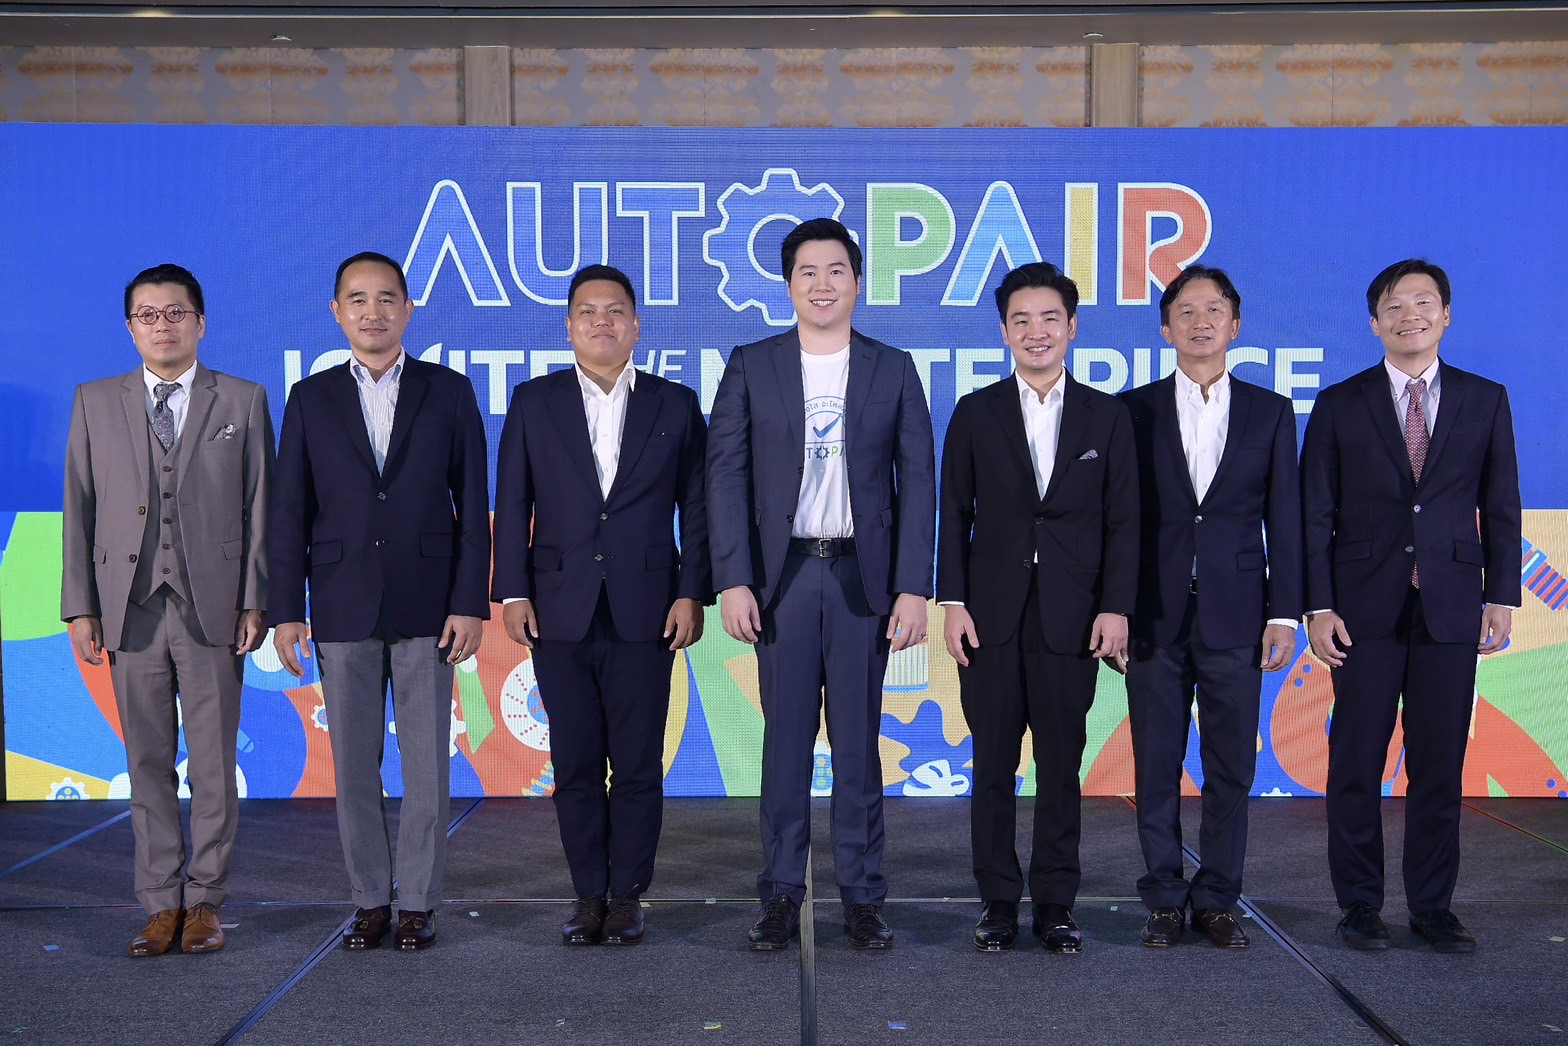 ออโต้แพร์ ระดมทุน Series A มูลค่ากว่า 70 ล้านบาท จาก มิตซูบิชิ คอร์ปอเรชั่น พลิกโฉมอุตสาหกรรมชิ้นส่วนและอะไหล่ทดแทนยานยนต์ของไทย